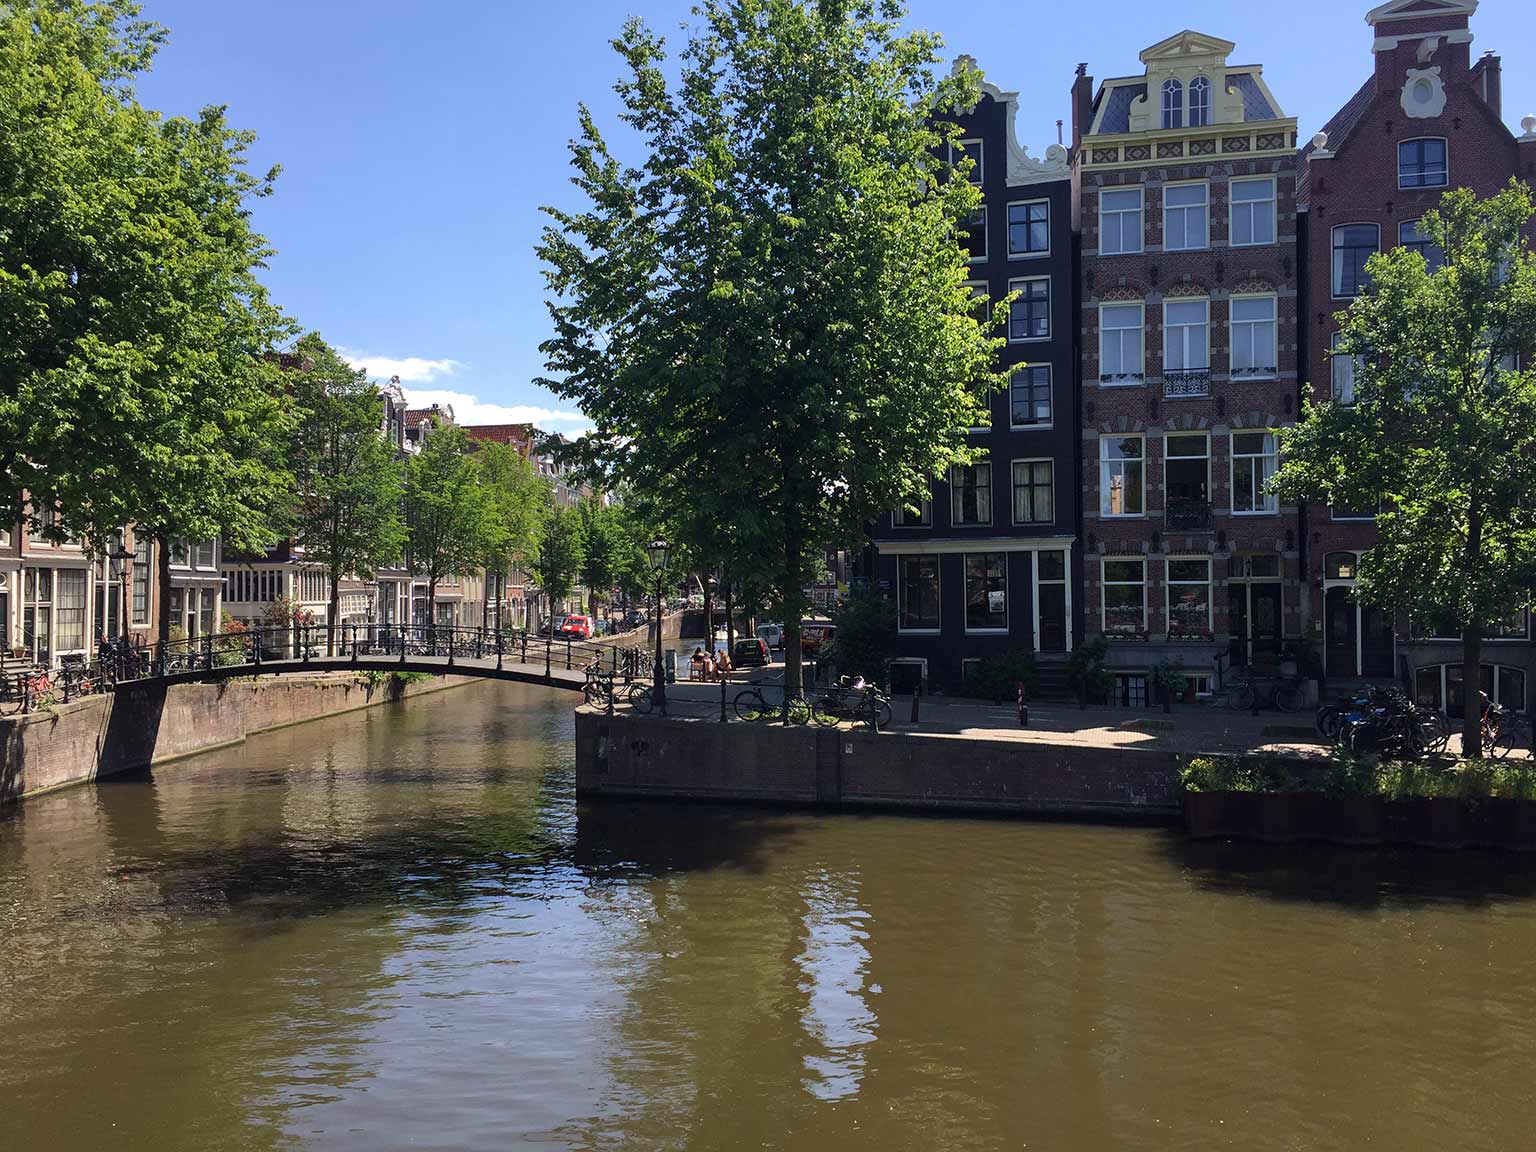 Melkmeisjesbrug, Amsterdam, across Brouwersgracht, corner Herengracht